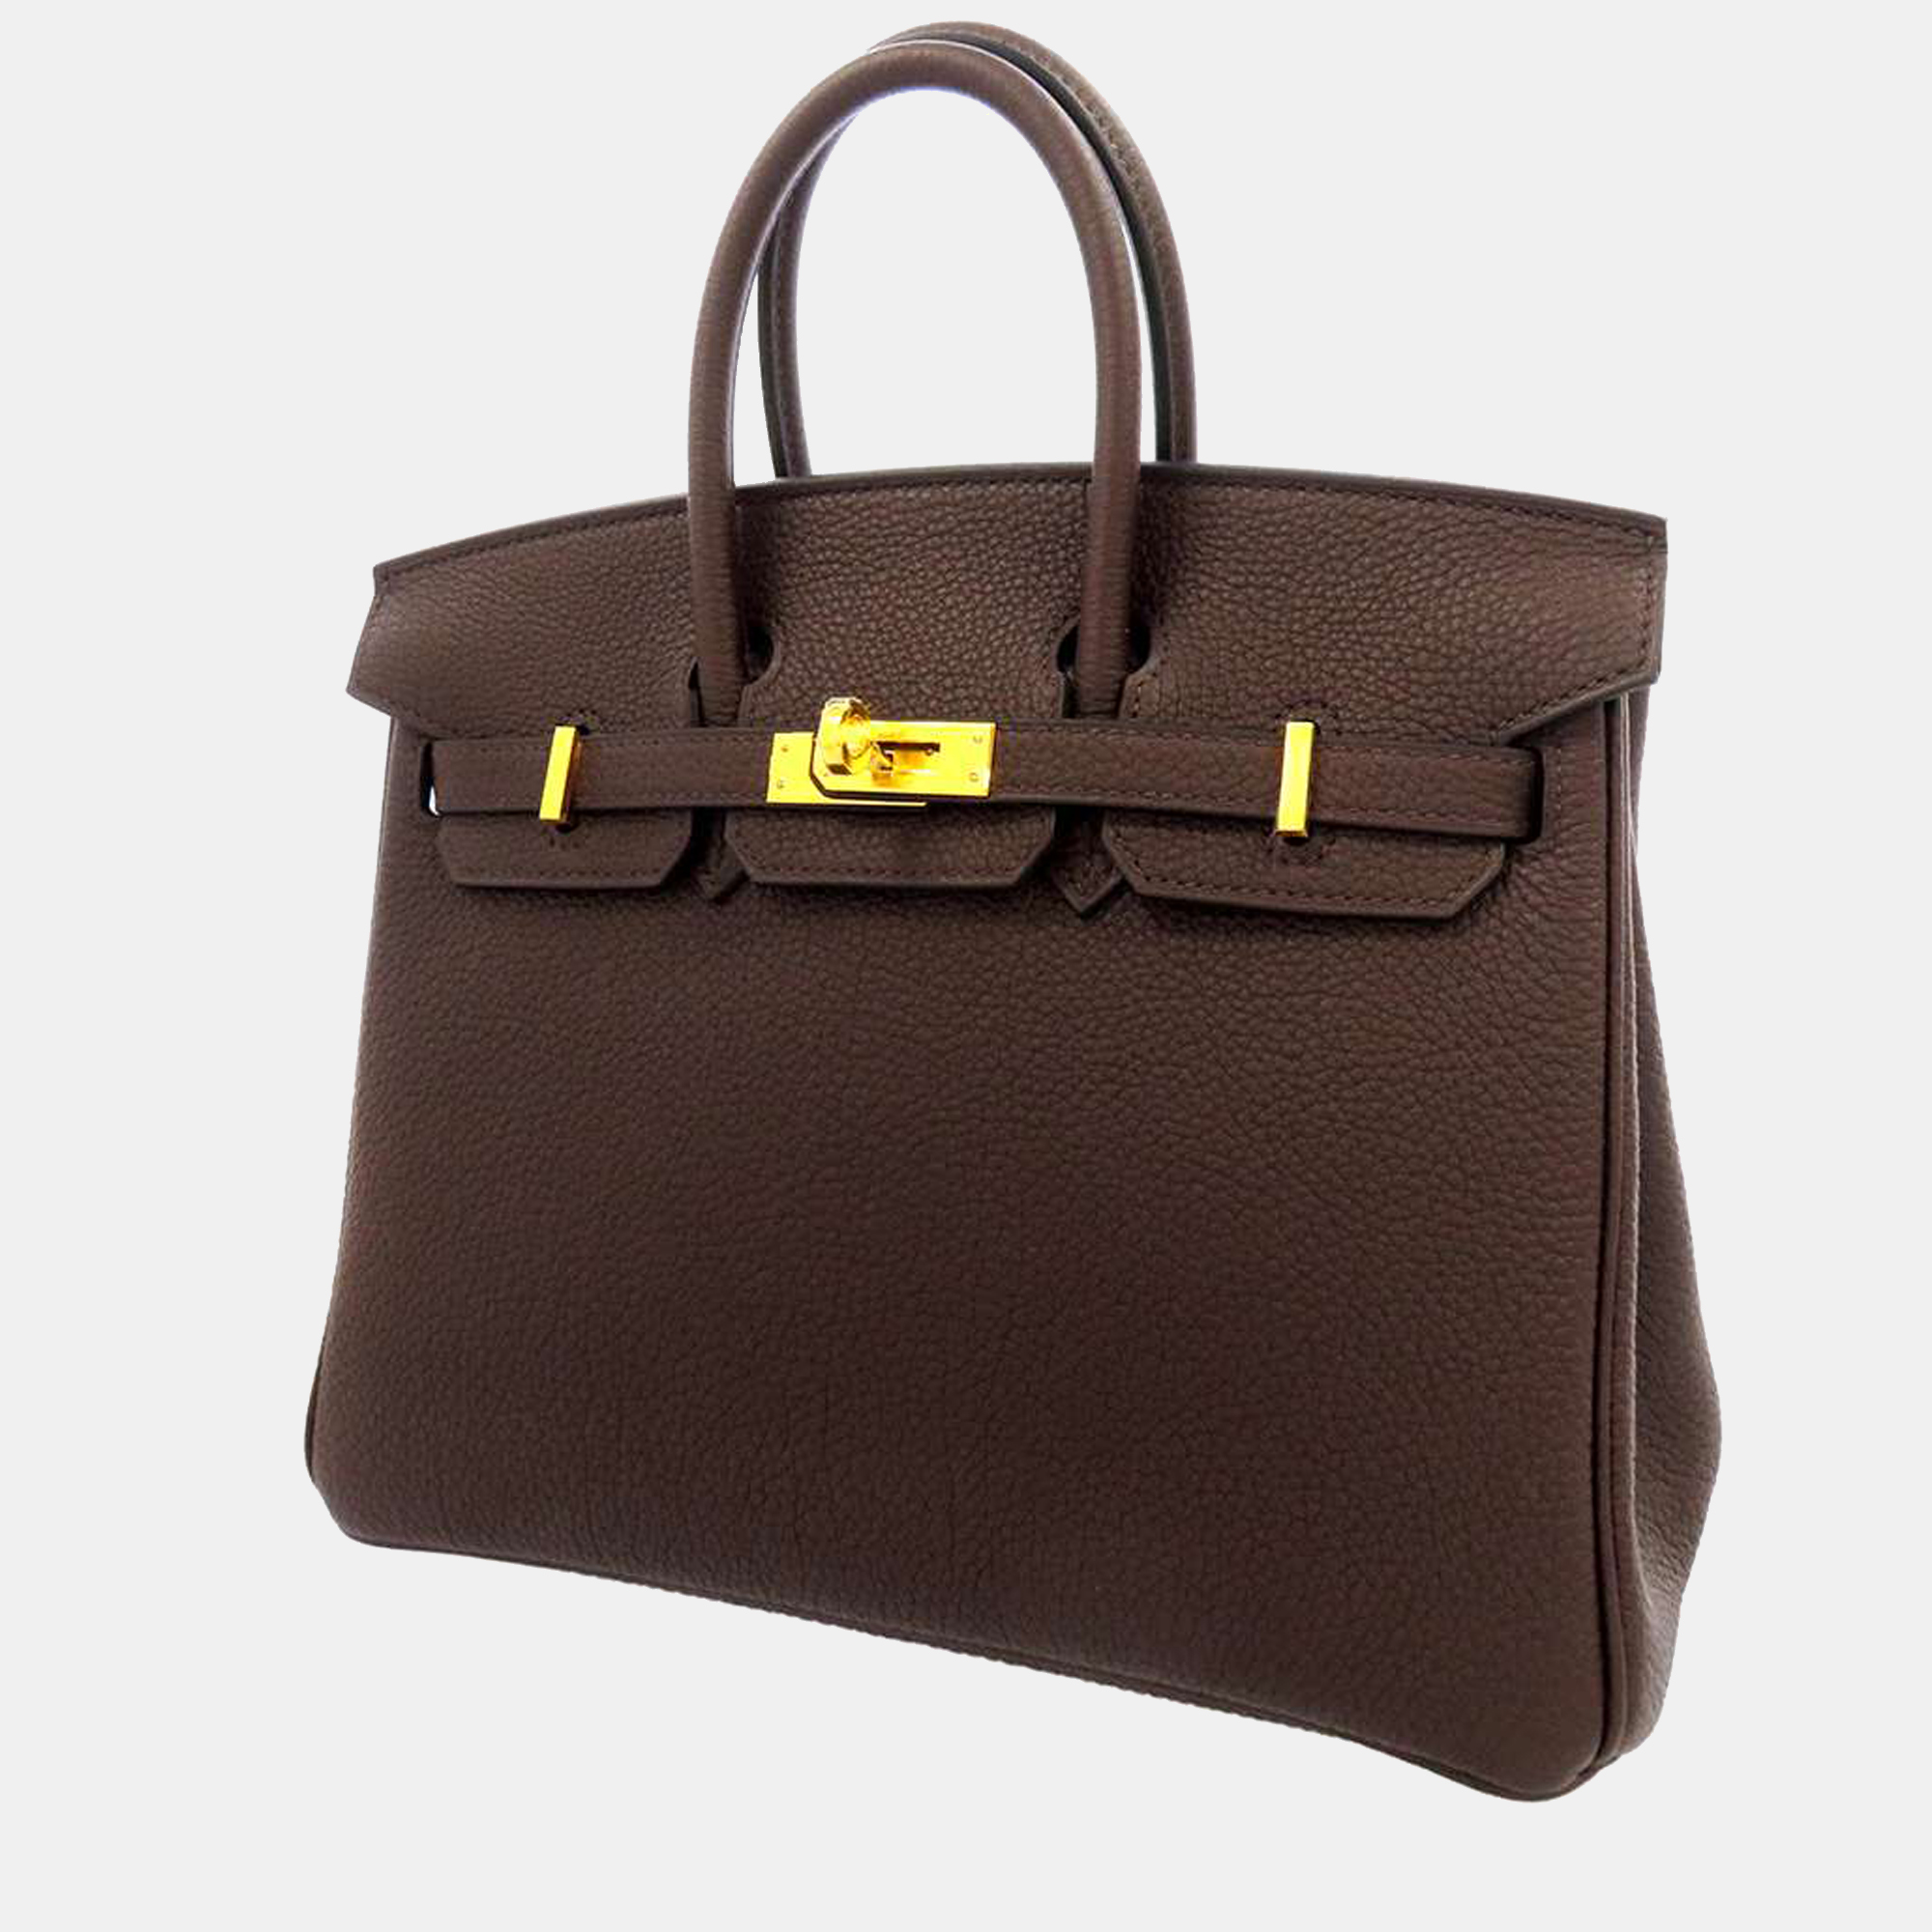 Hermes Brown Togo Leather Gold Hardware Birkin 25 Bag